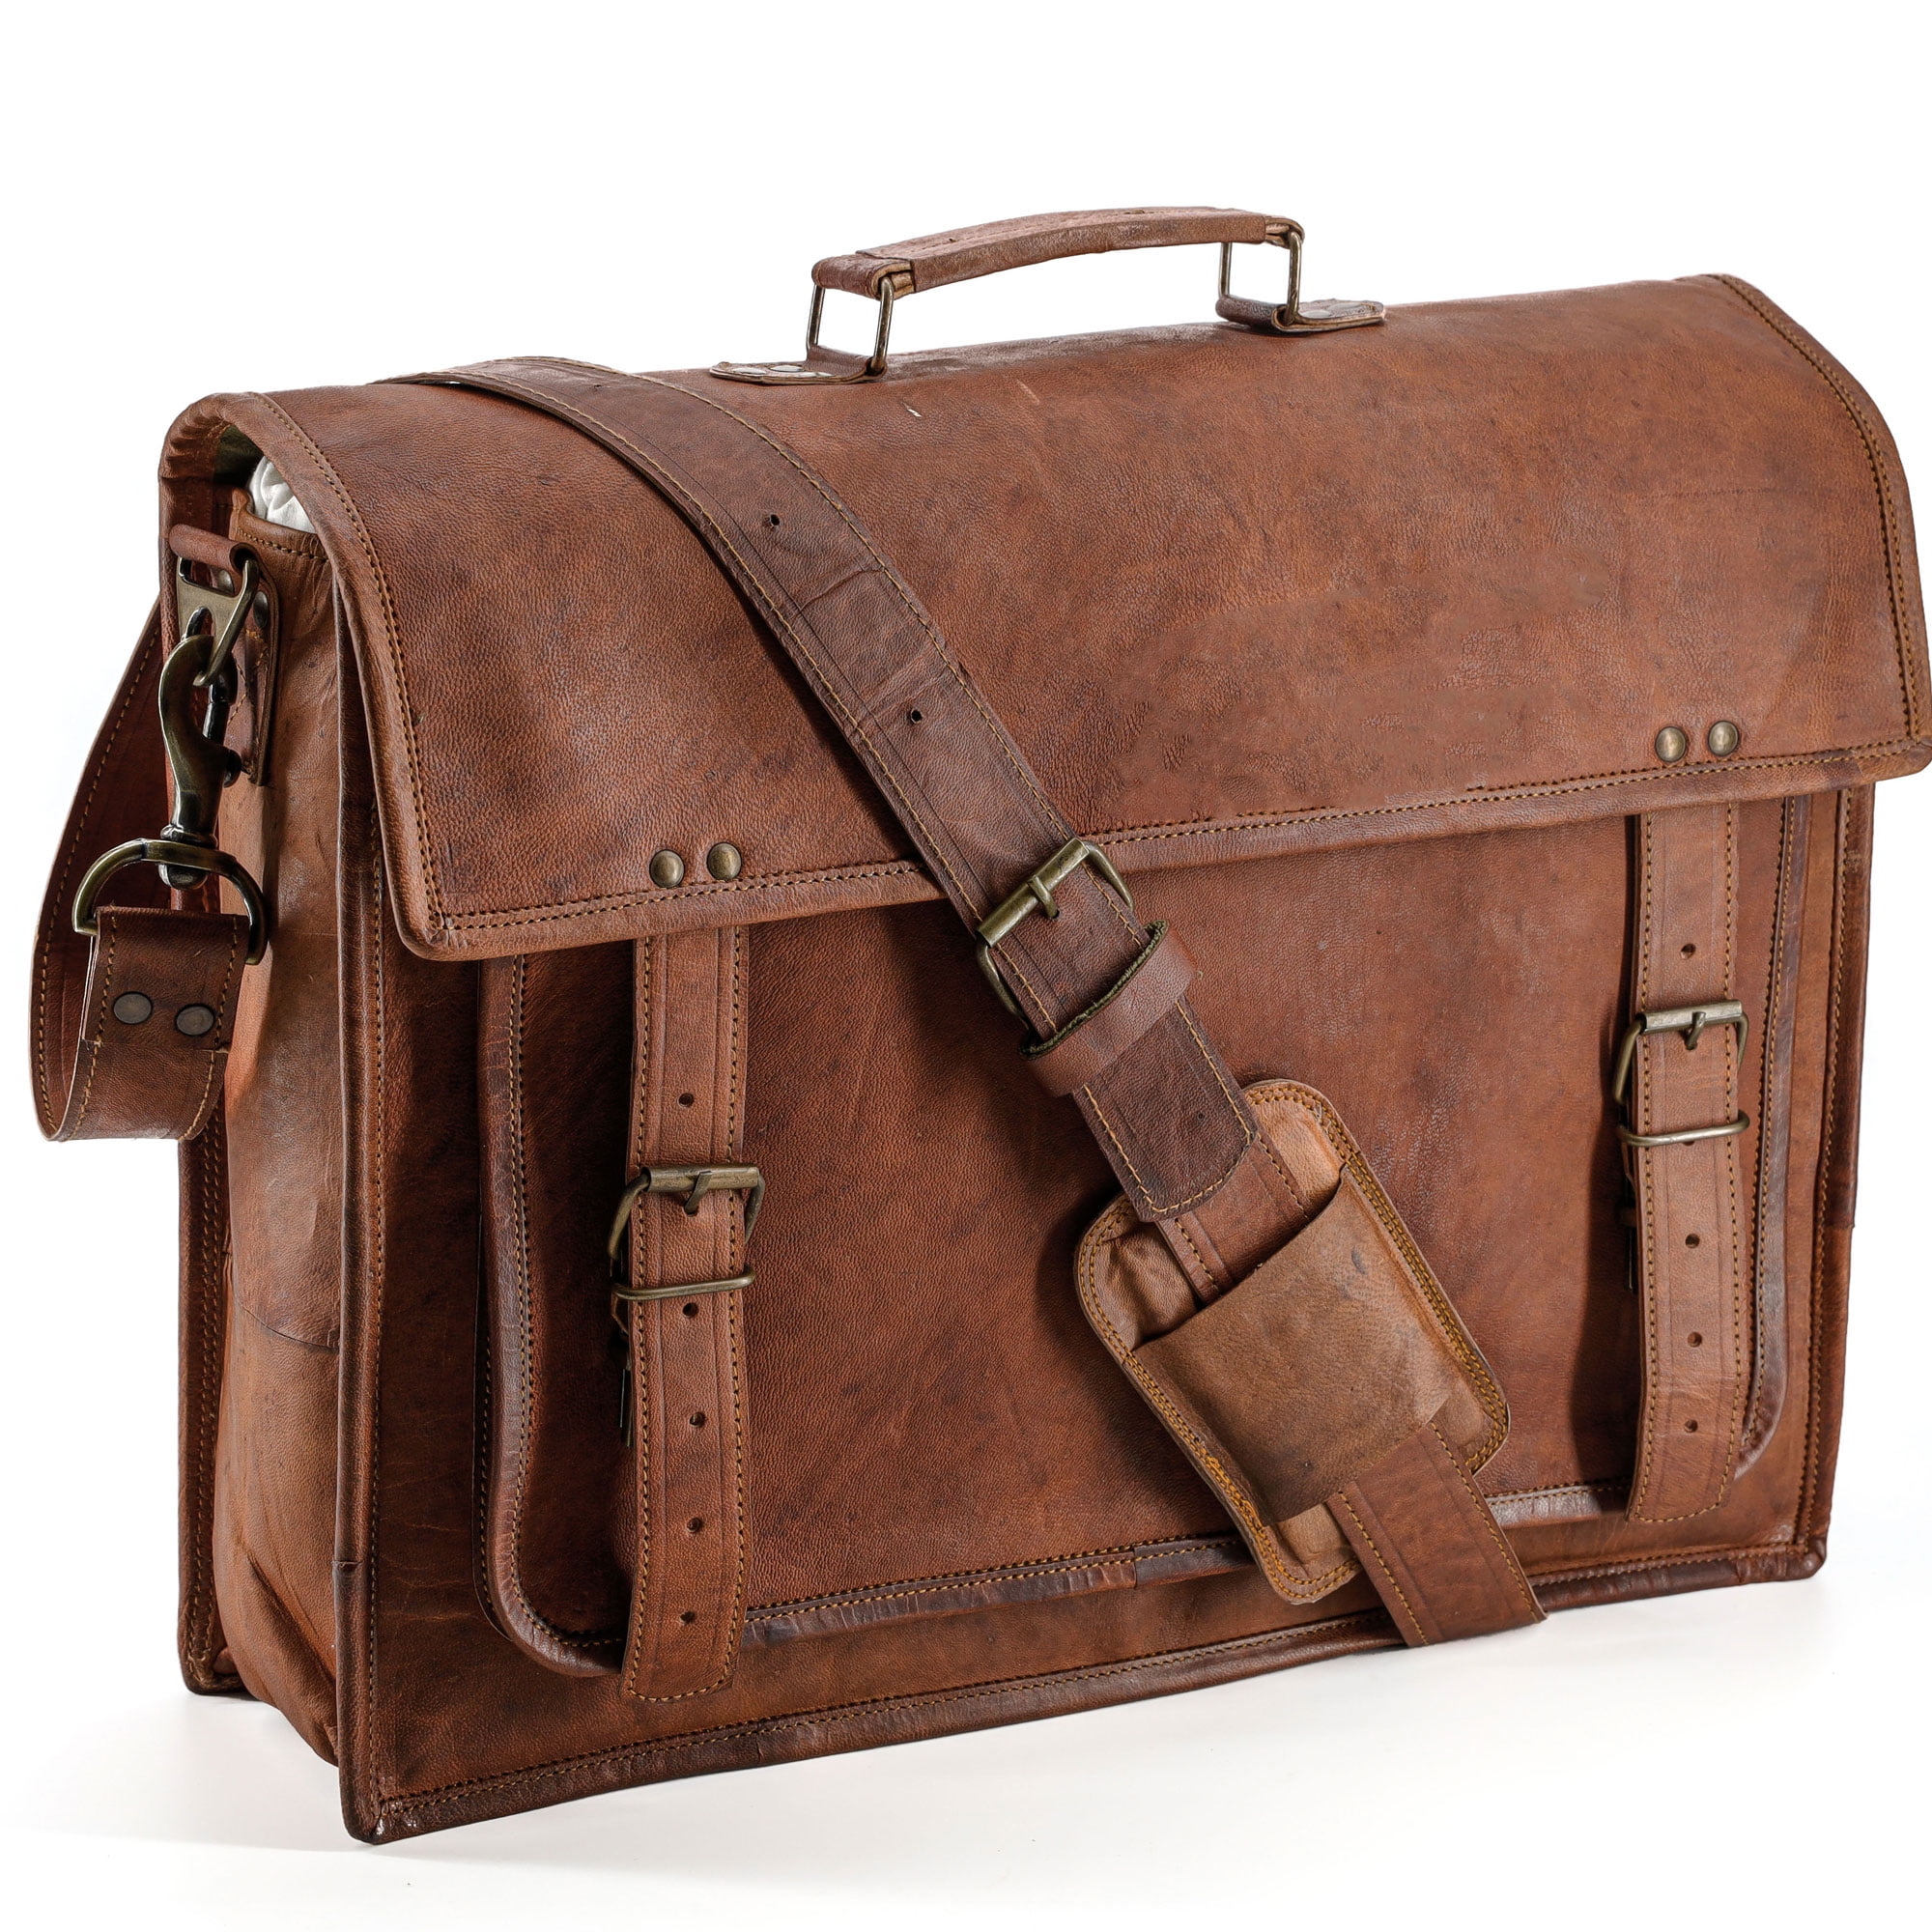 18" Vintage Briefcase Satchel Soft Leather Laptop Messenger Bag Shoulder Men New 